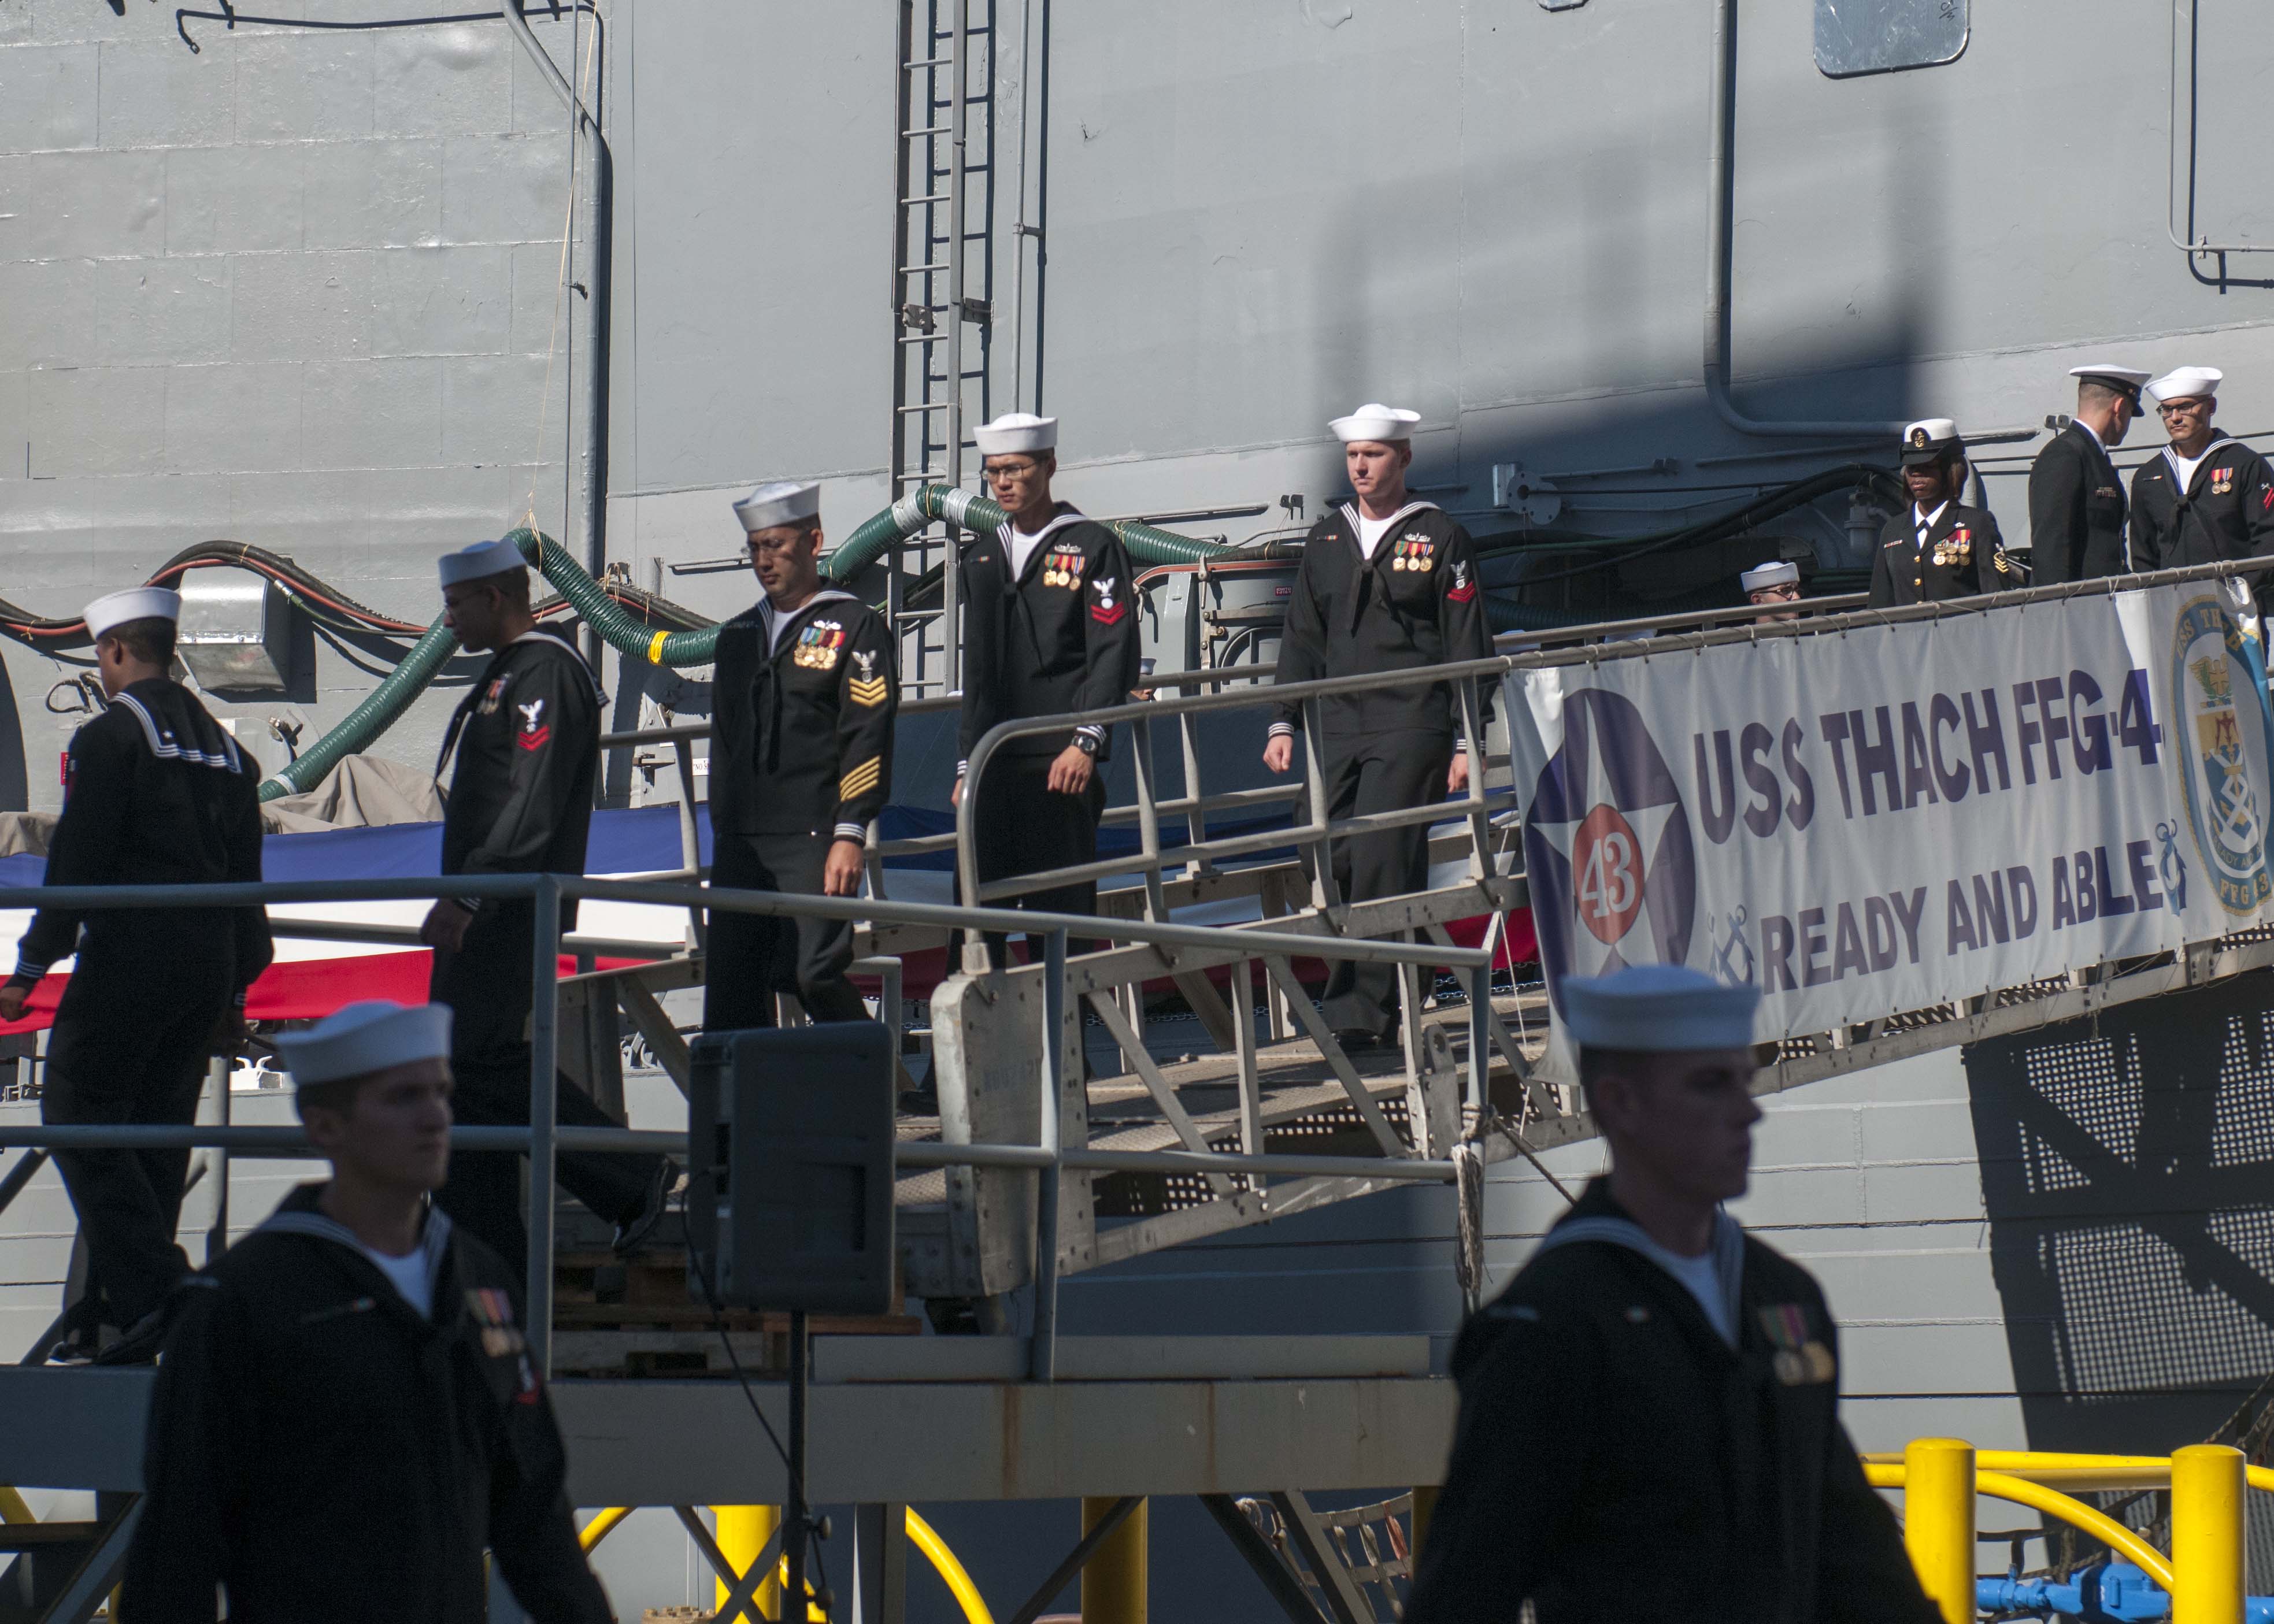 USS THACH FFG-43 Decommissioning CeremonyBild: U.S. Navy